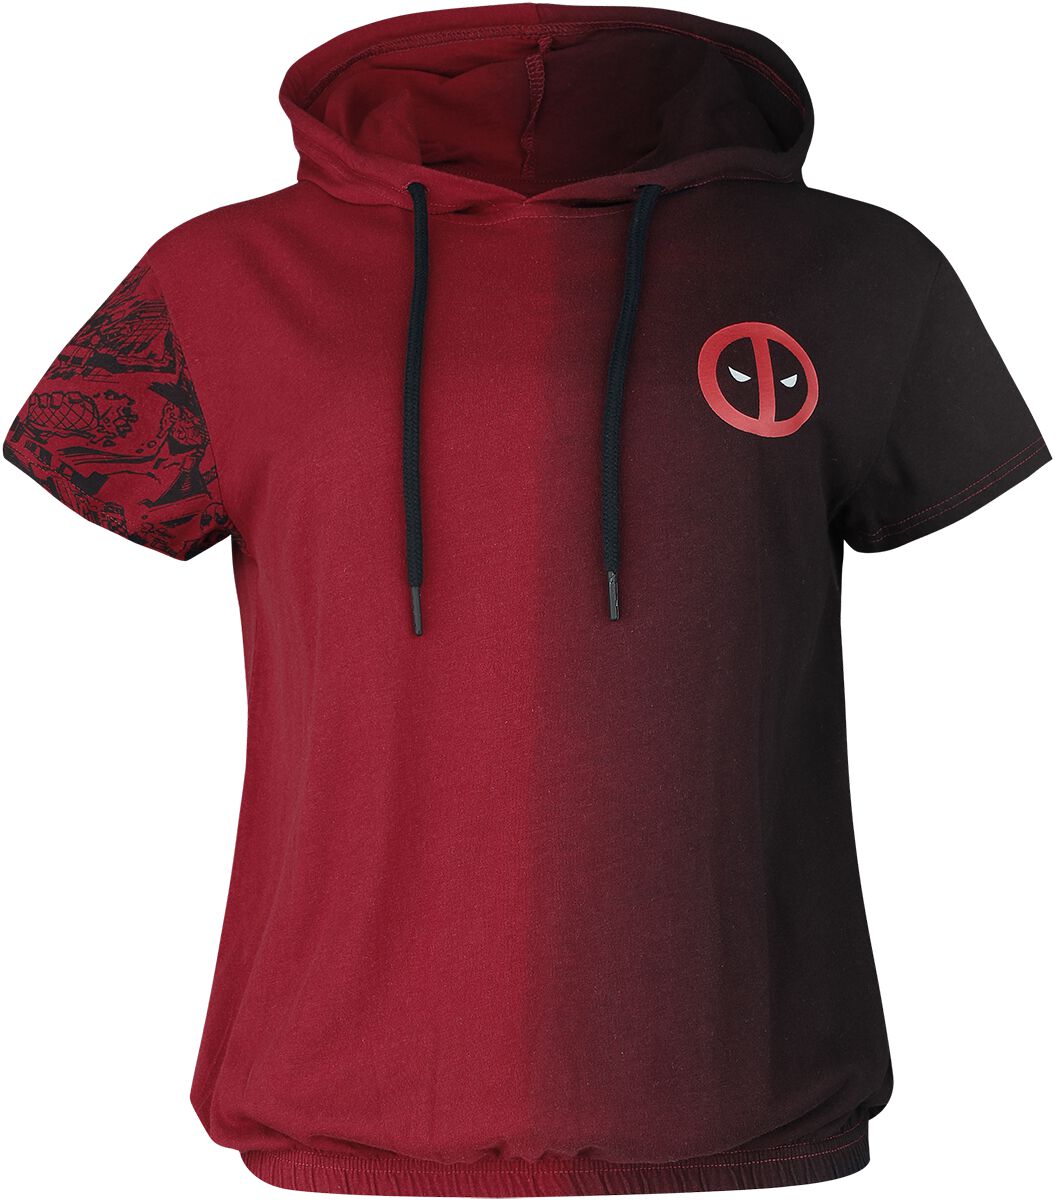 Deadpool - Marvel T-Shirt - Merc With A Mouth - S bis M - für Damen - Größe M - rot/schwarz  - EMP exklusives Merchandise!